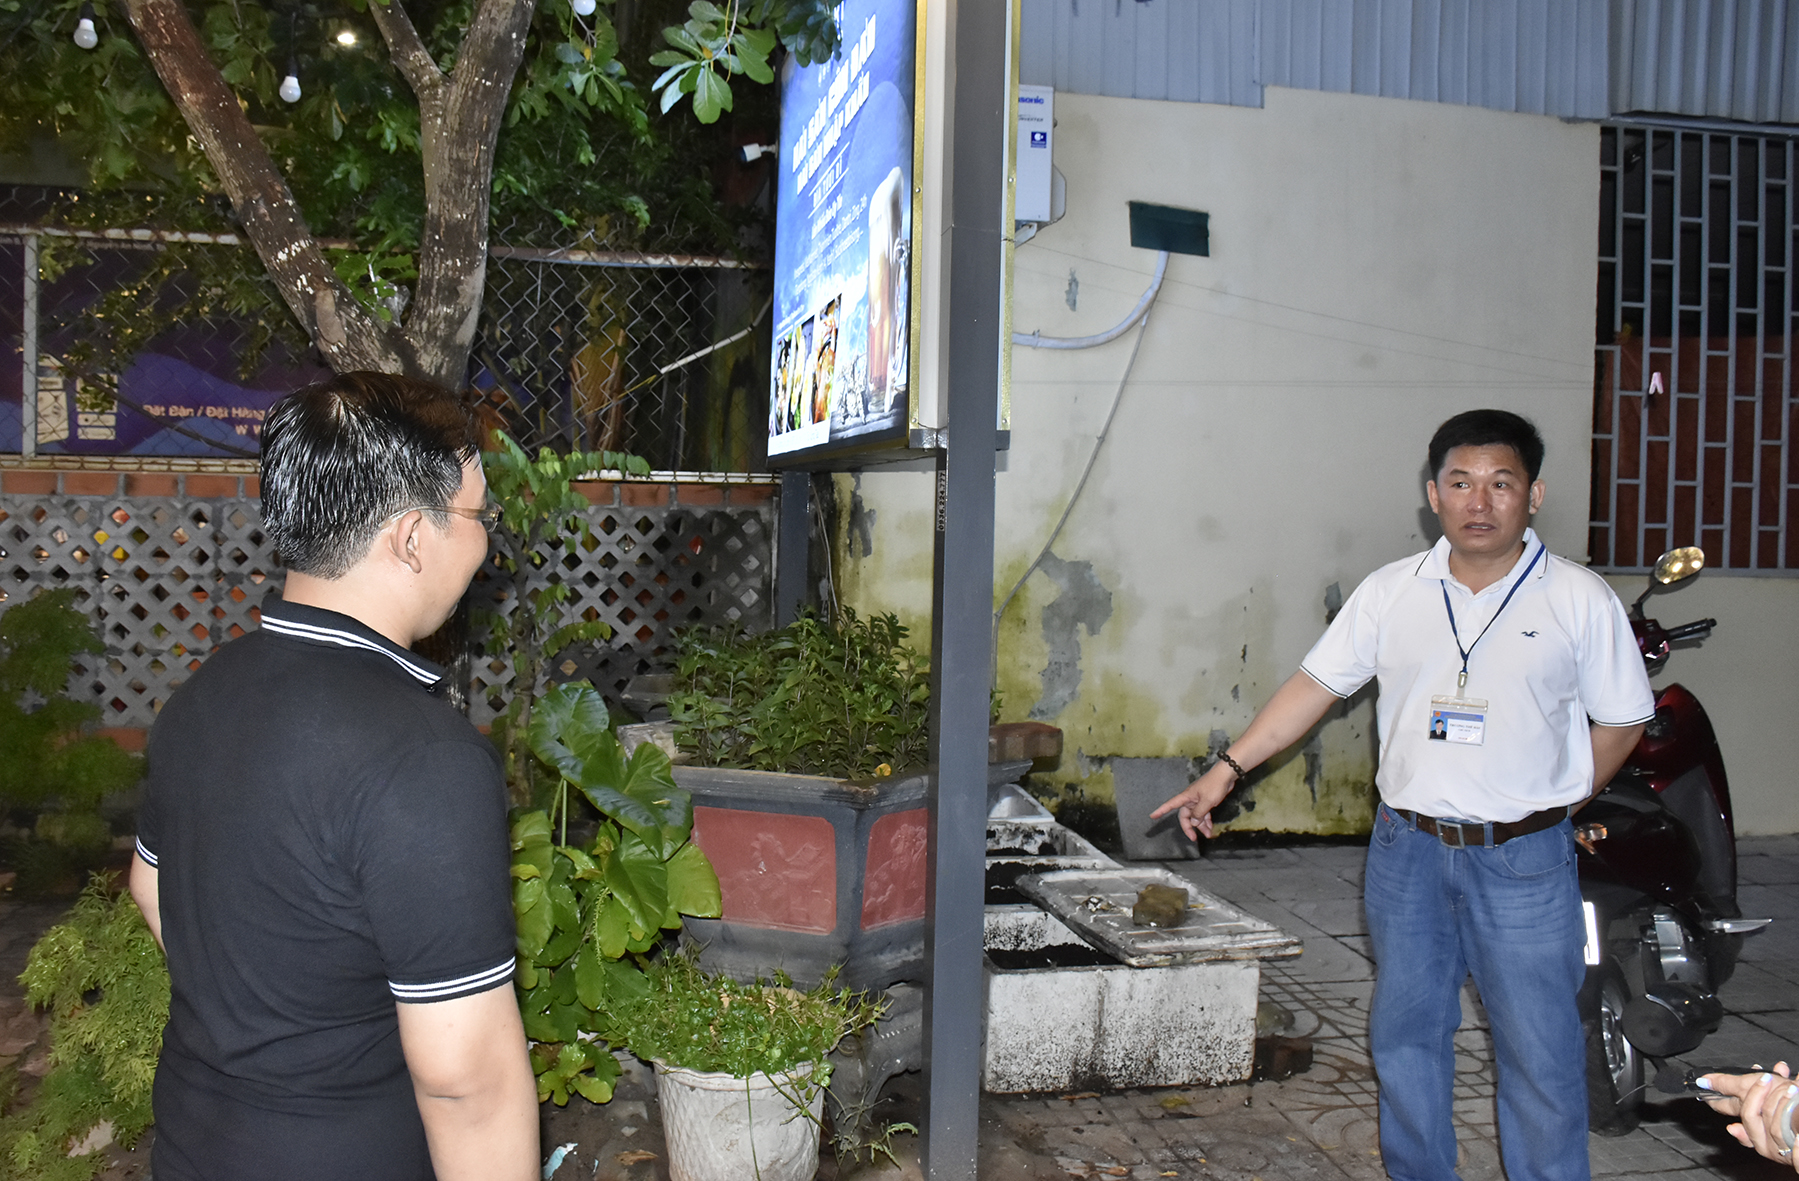 Ông Trương Thế Hải, Chủ tịch UBND phường Nguyễn An Ninh nhắc nhở đại diện một nhà hàng nằm trong khu đô thị Chí Linh phải tháo dỡ biển quảng cáo choán hết vỉa hè